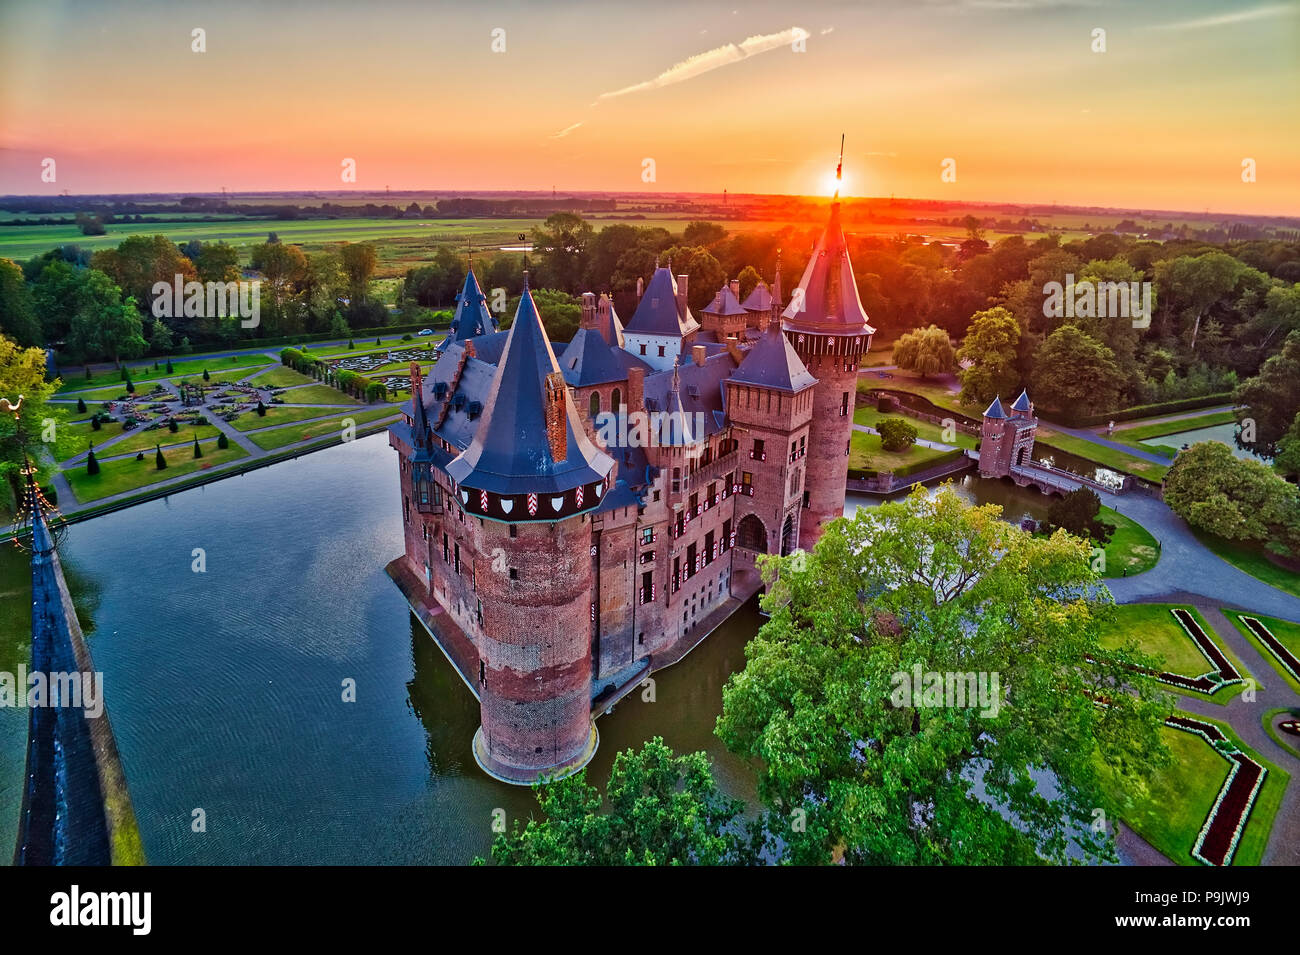 Vista aérea del castillo medieval de Haar al atardecer en Países Bajos, Europa. Actuales edificios construidos sobre el castillo original datan de 1892. HDR Foto de stock